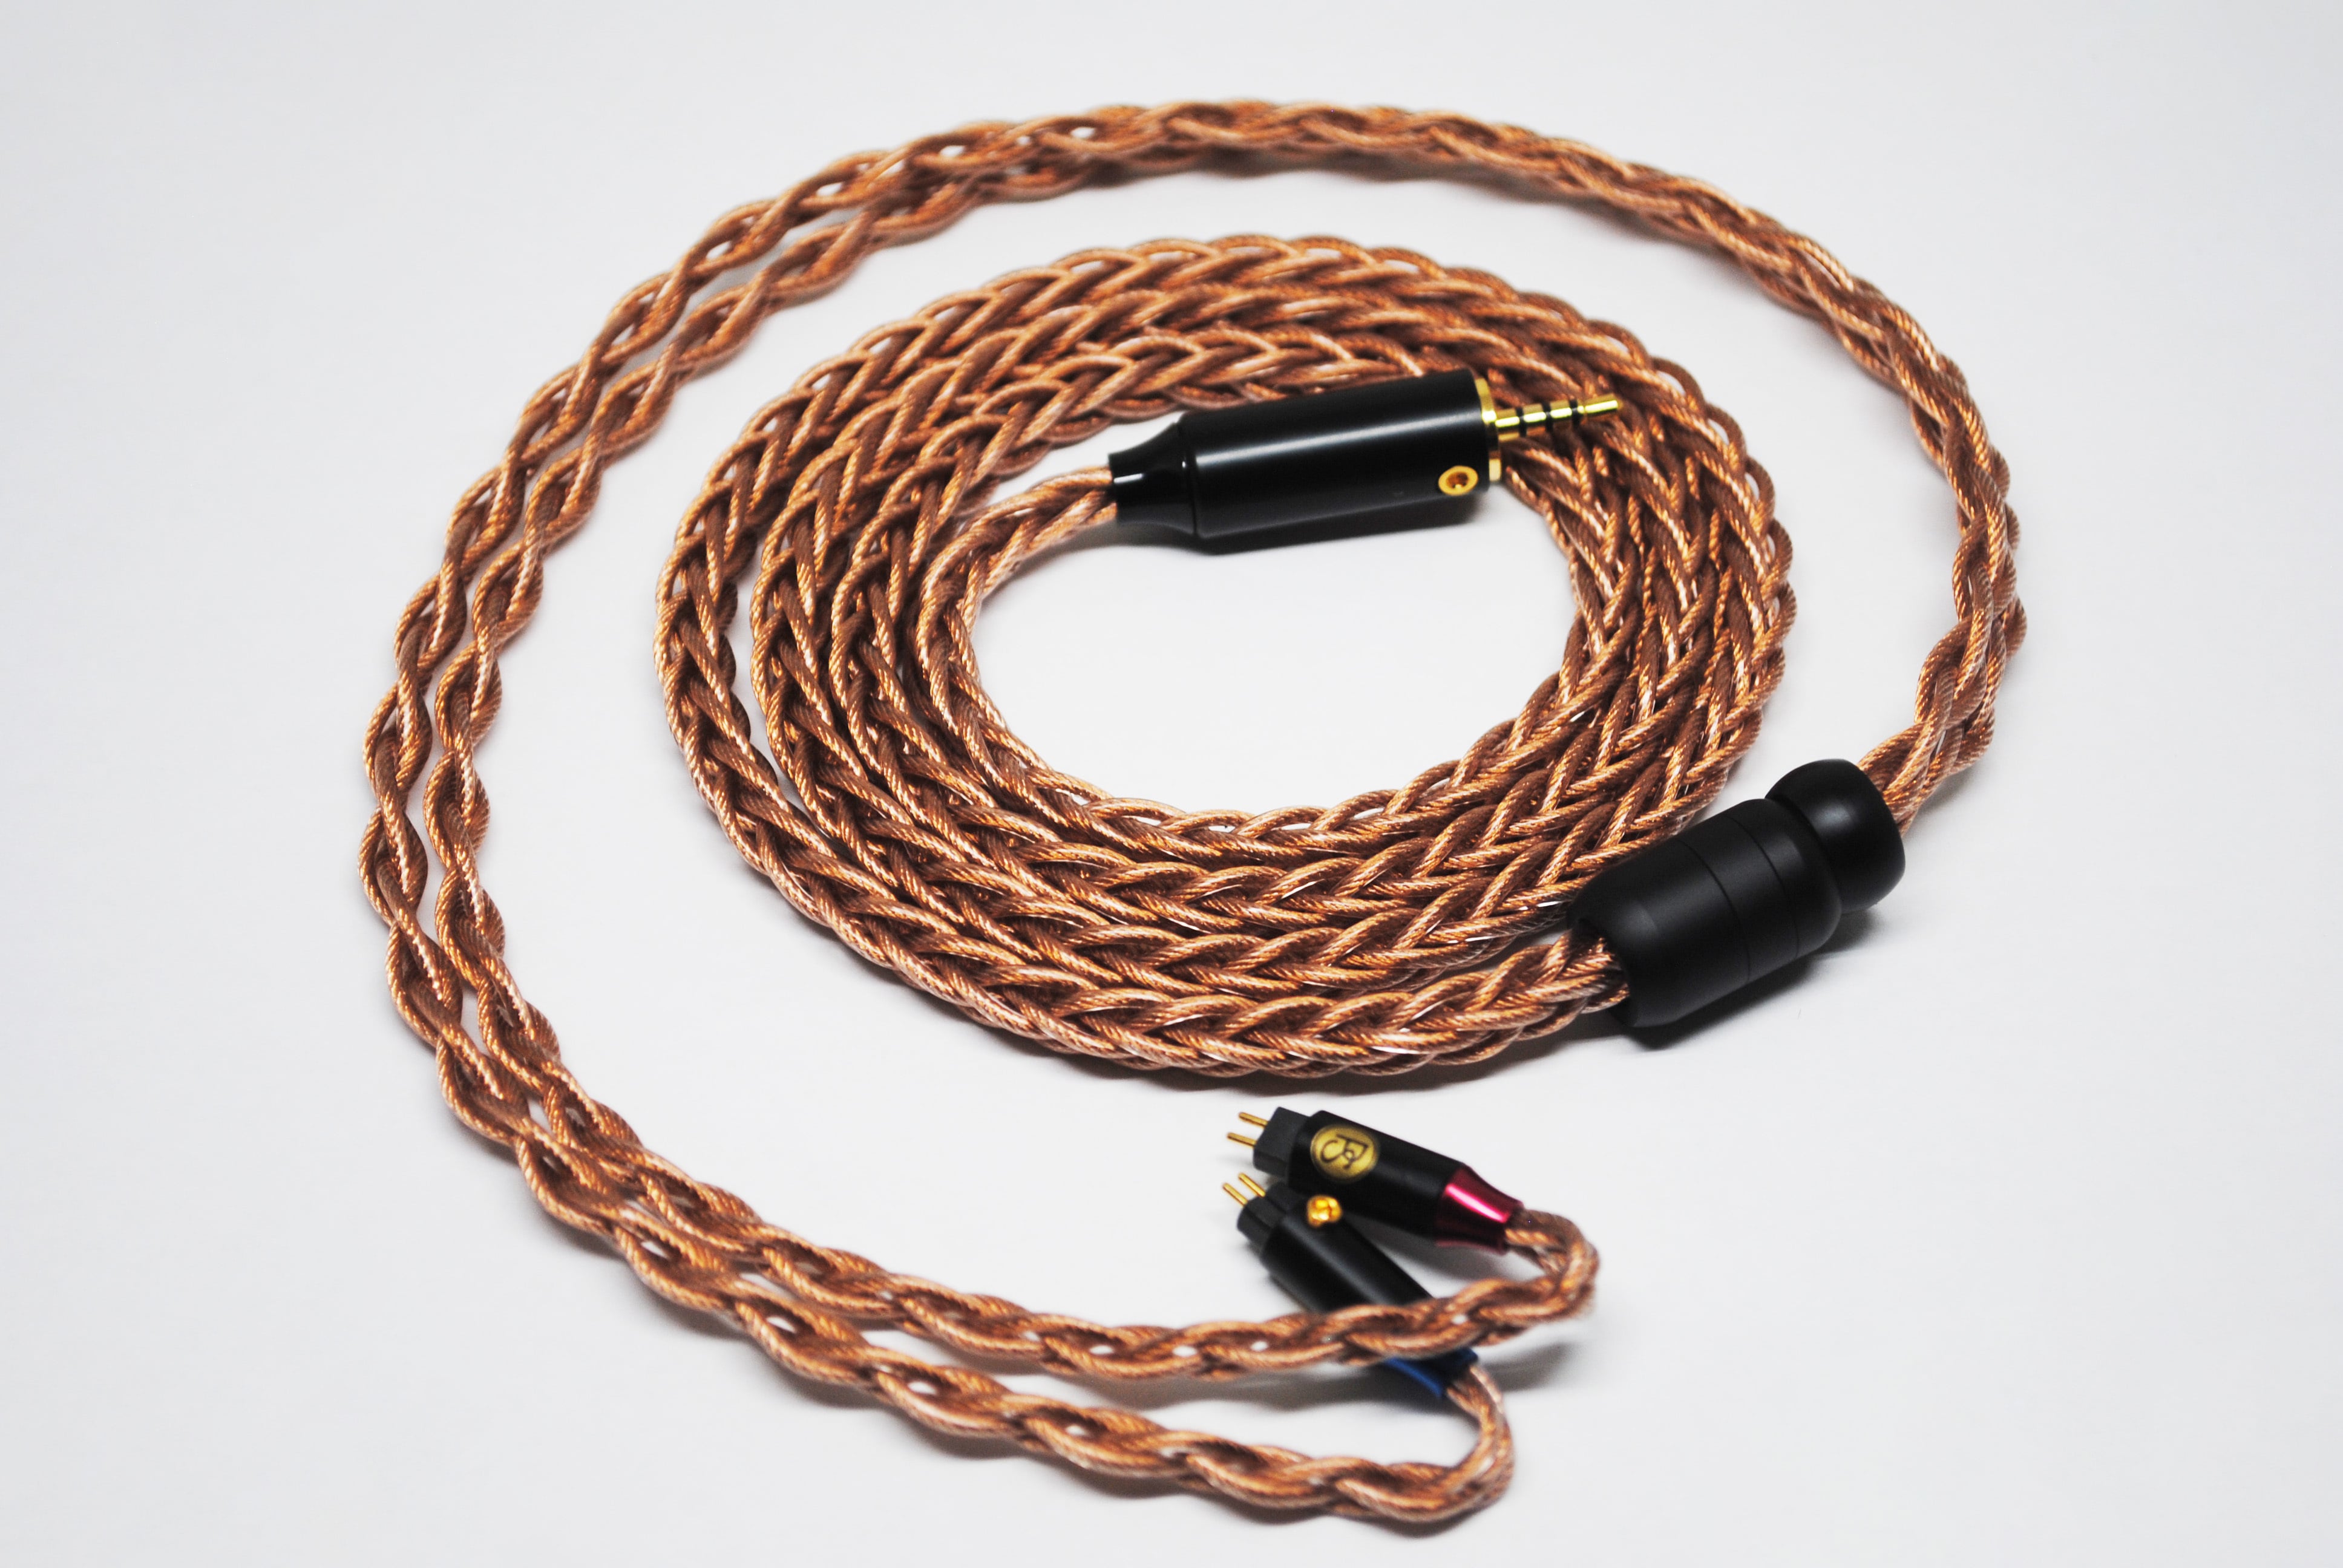 PLUSSOUND X8 Series Cable (IEM Version)